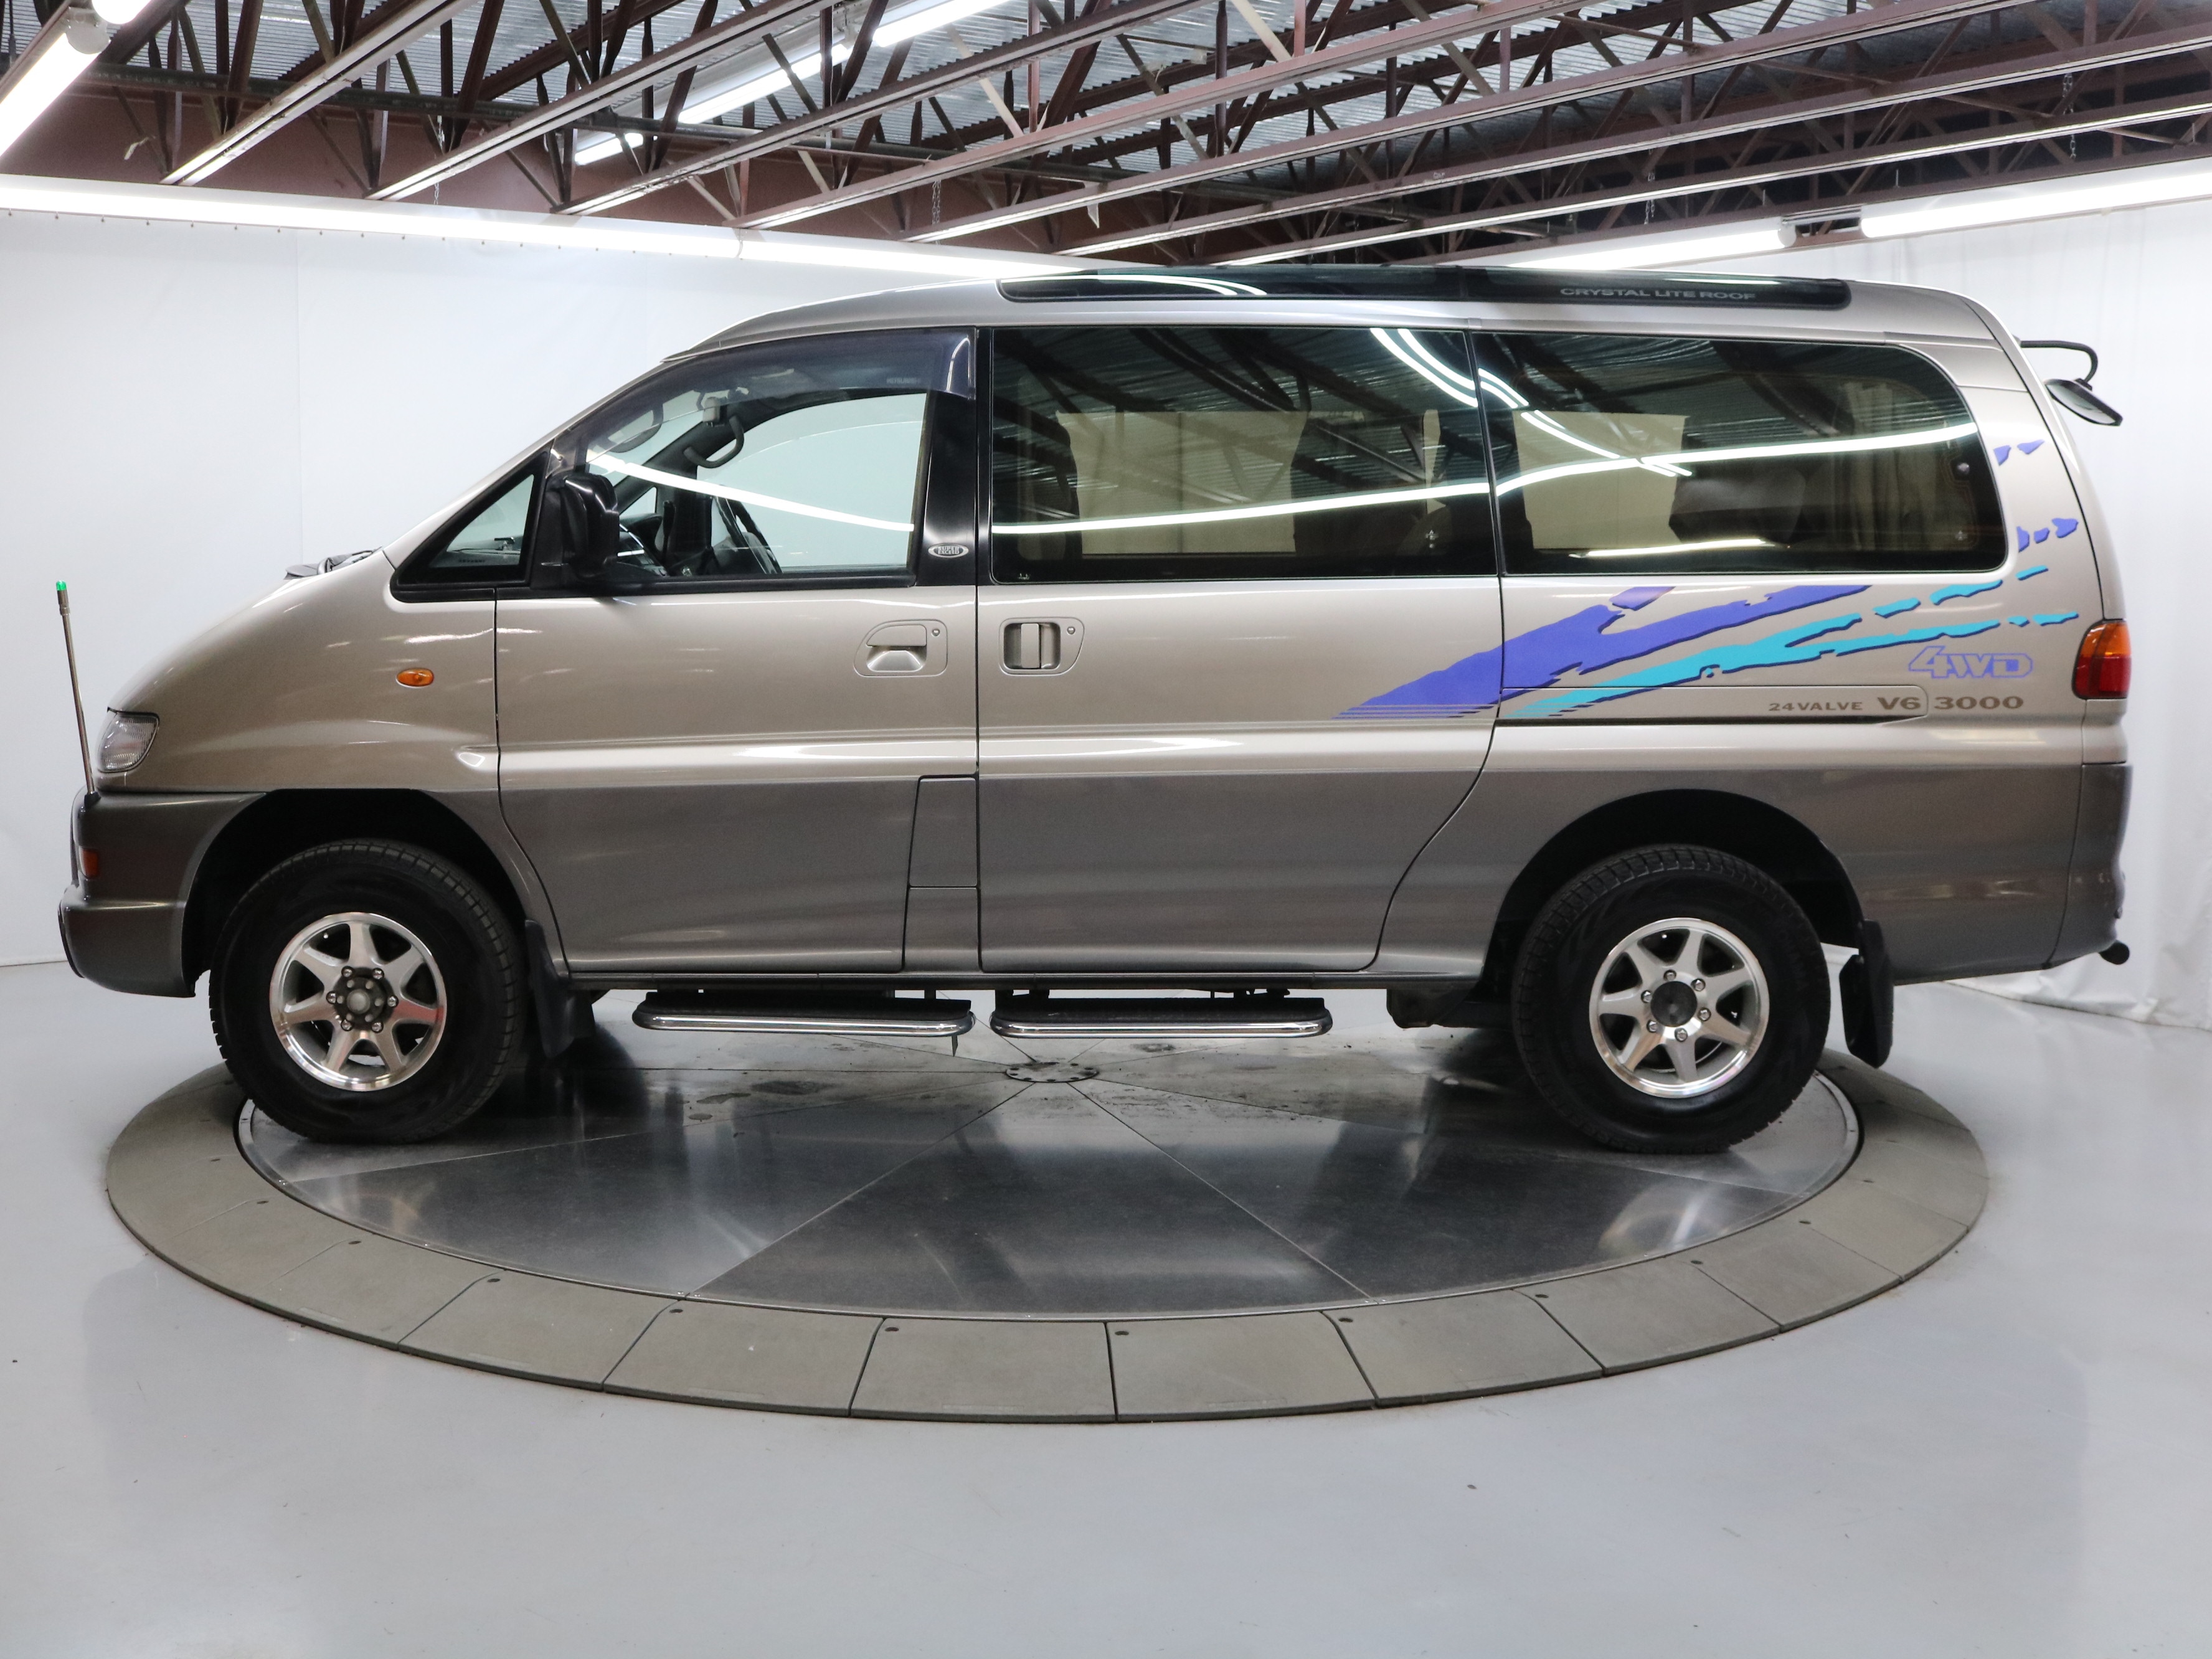 1997 Mitsubishi Delica 4